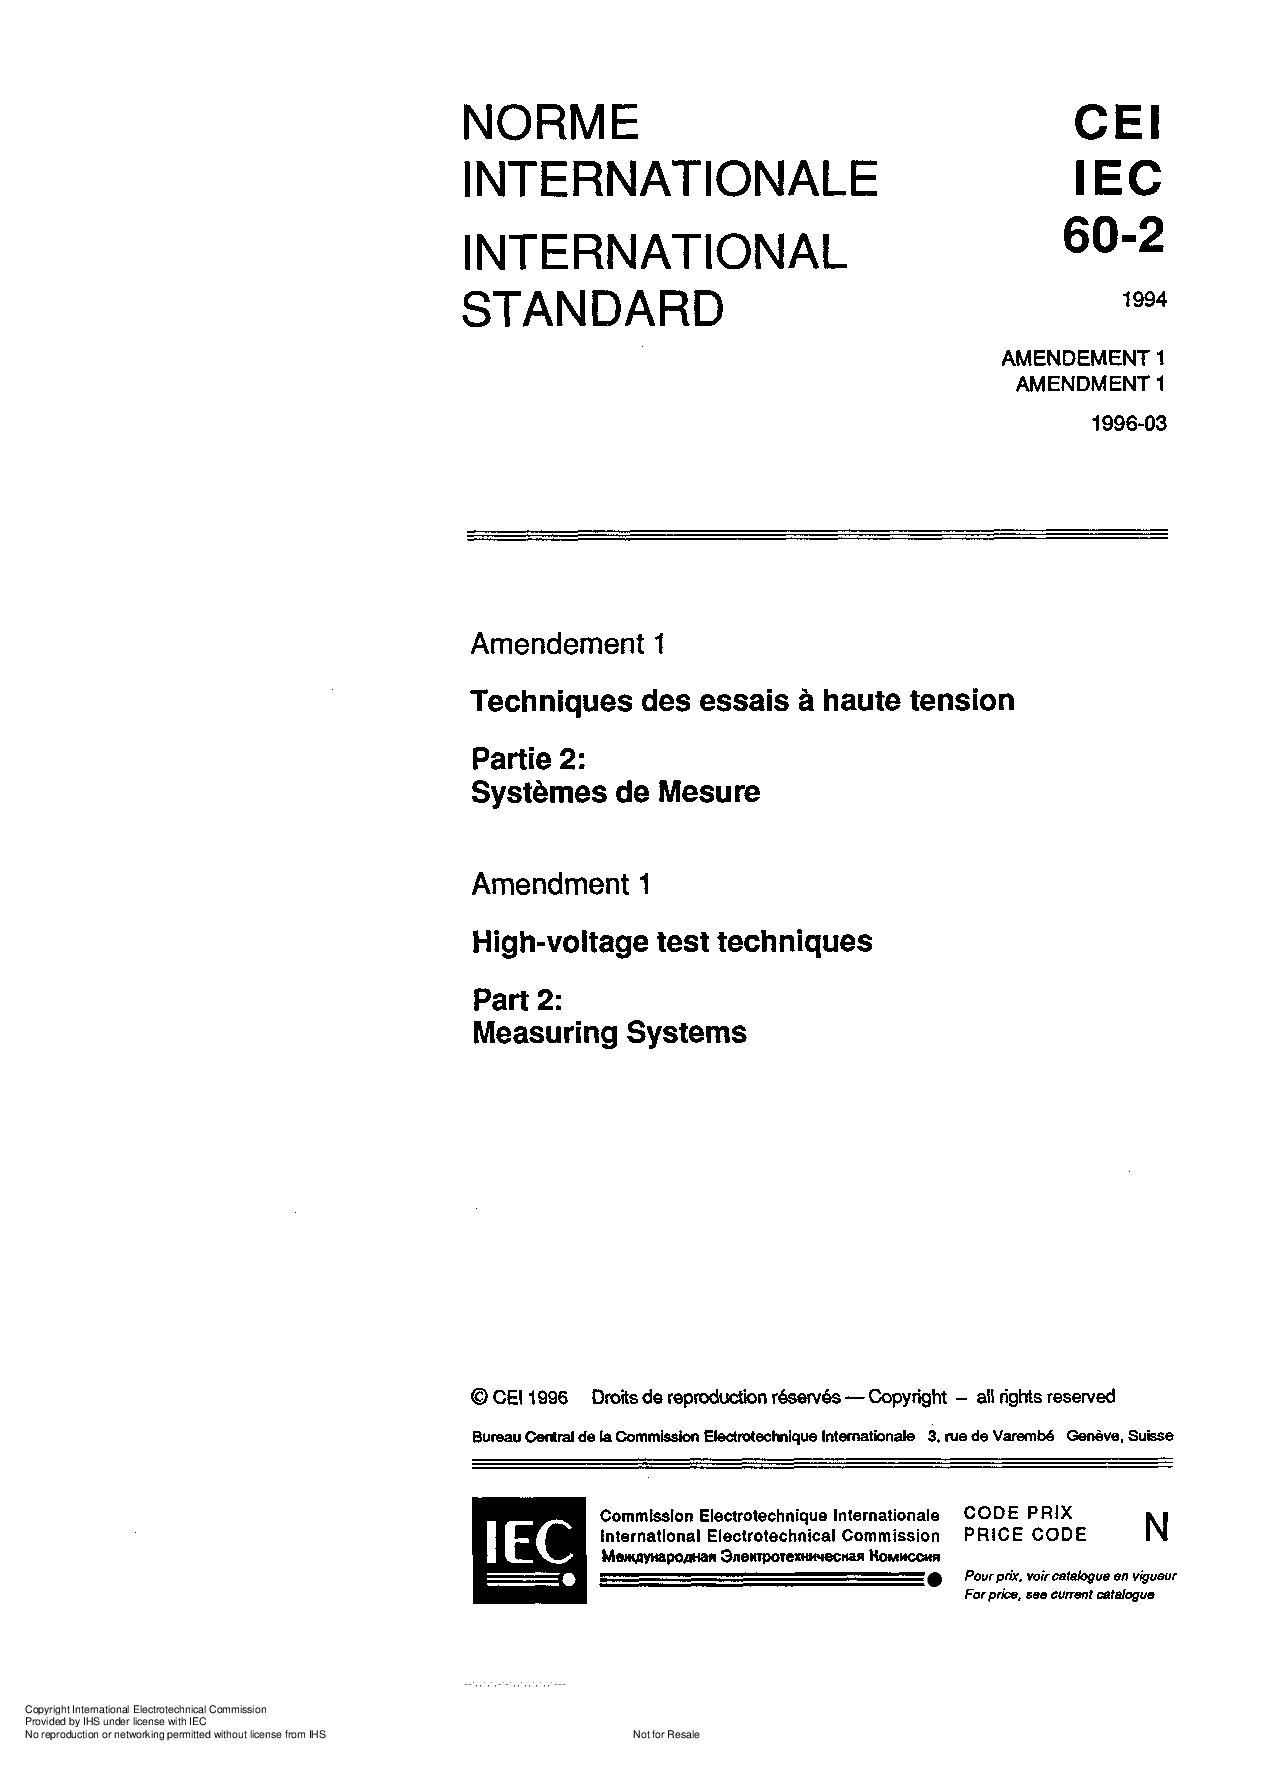 IEC 60060-2:1994封面图